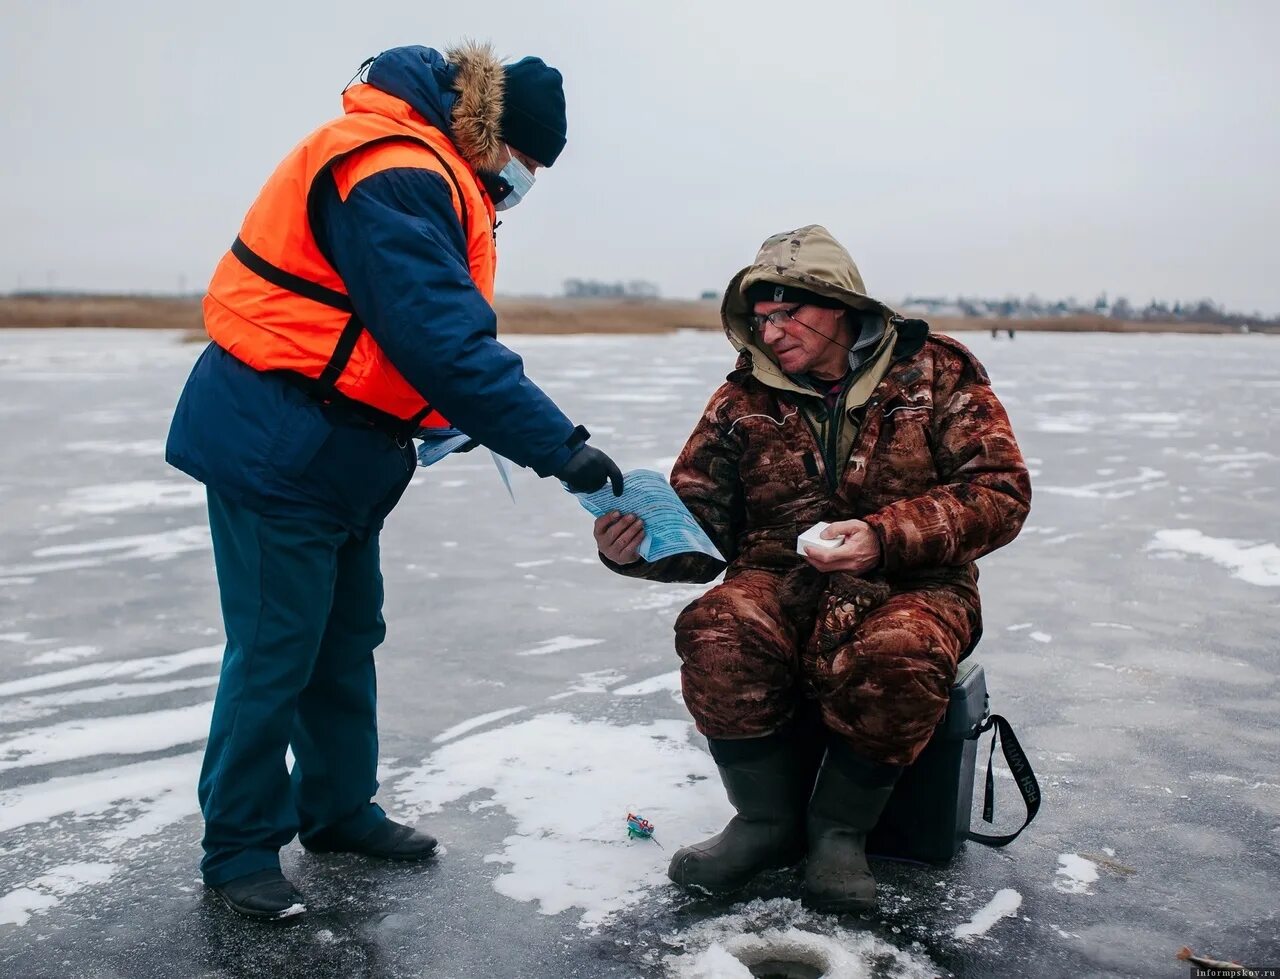 Рыбаки на льду. Рыбаки на тонком льду. Лед. Выход на лед опасен рыбаки.